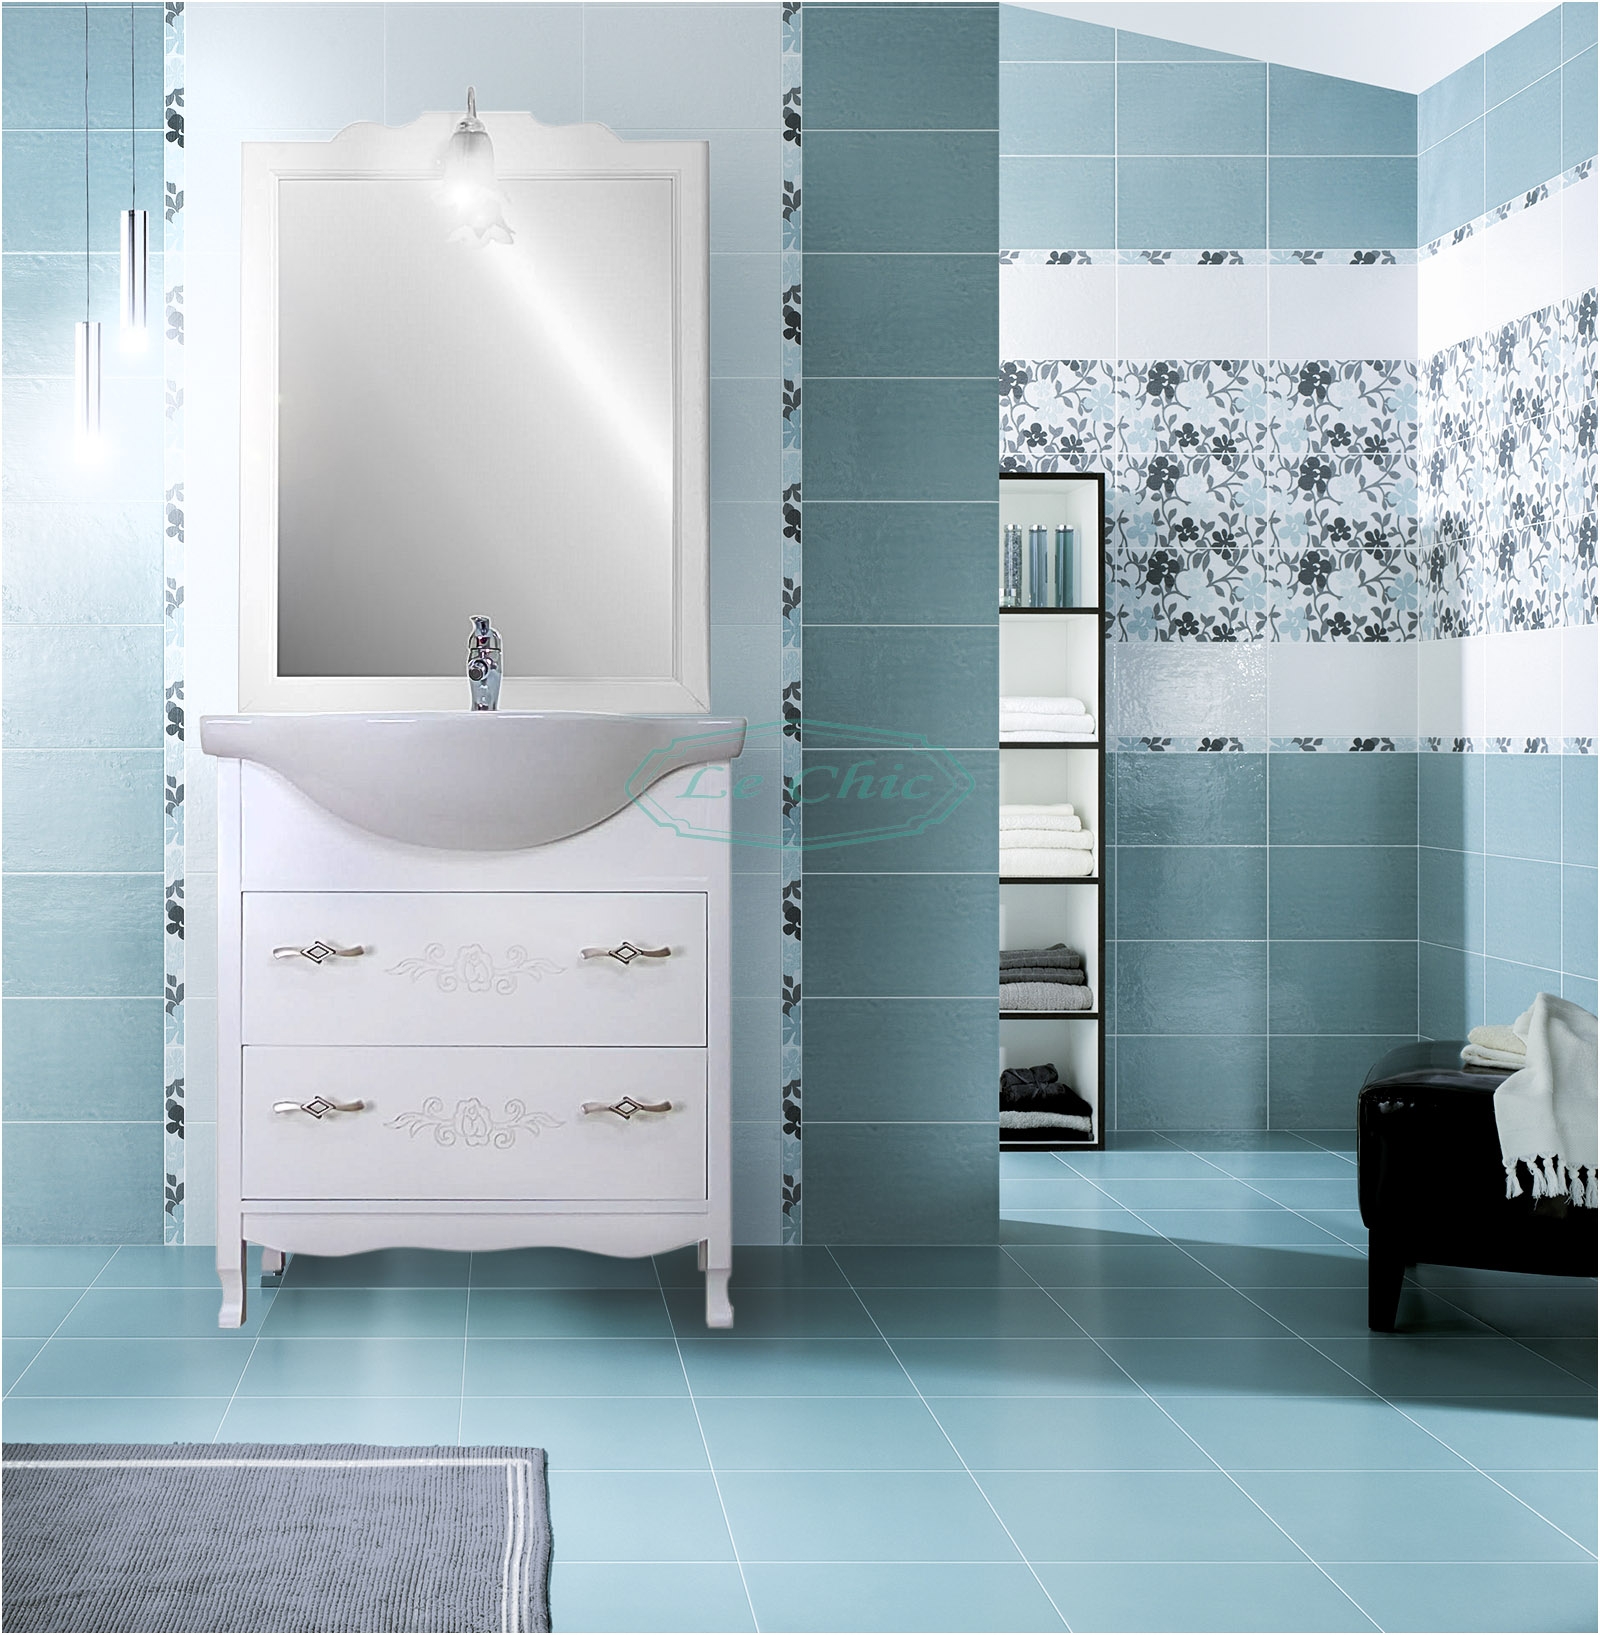 Arredo bagno 85 contemporaneo bianco shabby specchio cassettoni scorrevoli  - Le Chic Arredamenti